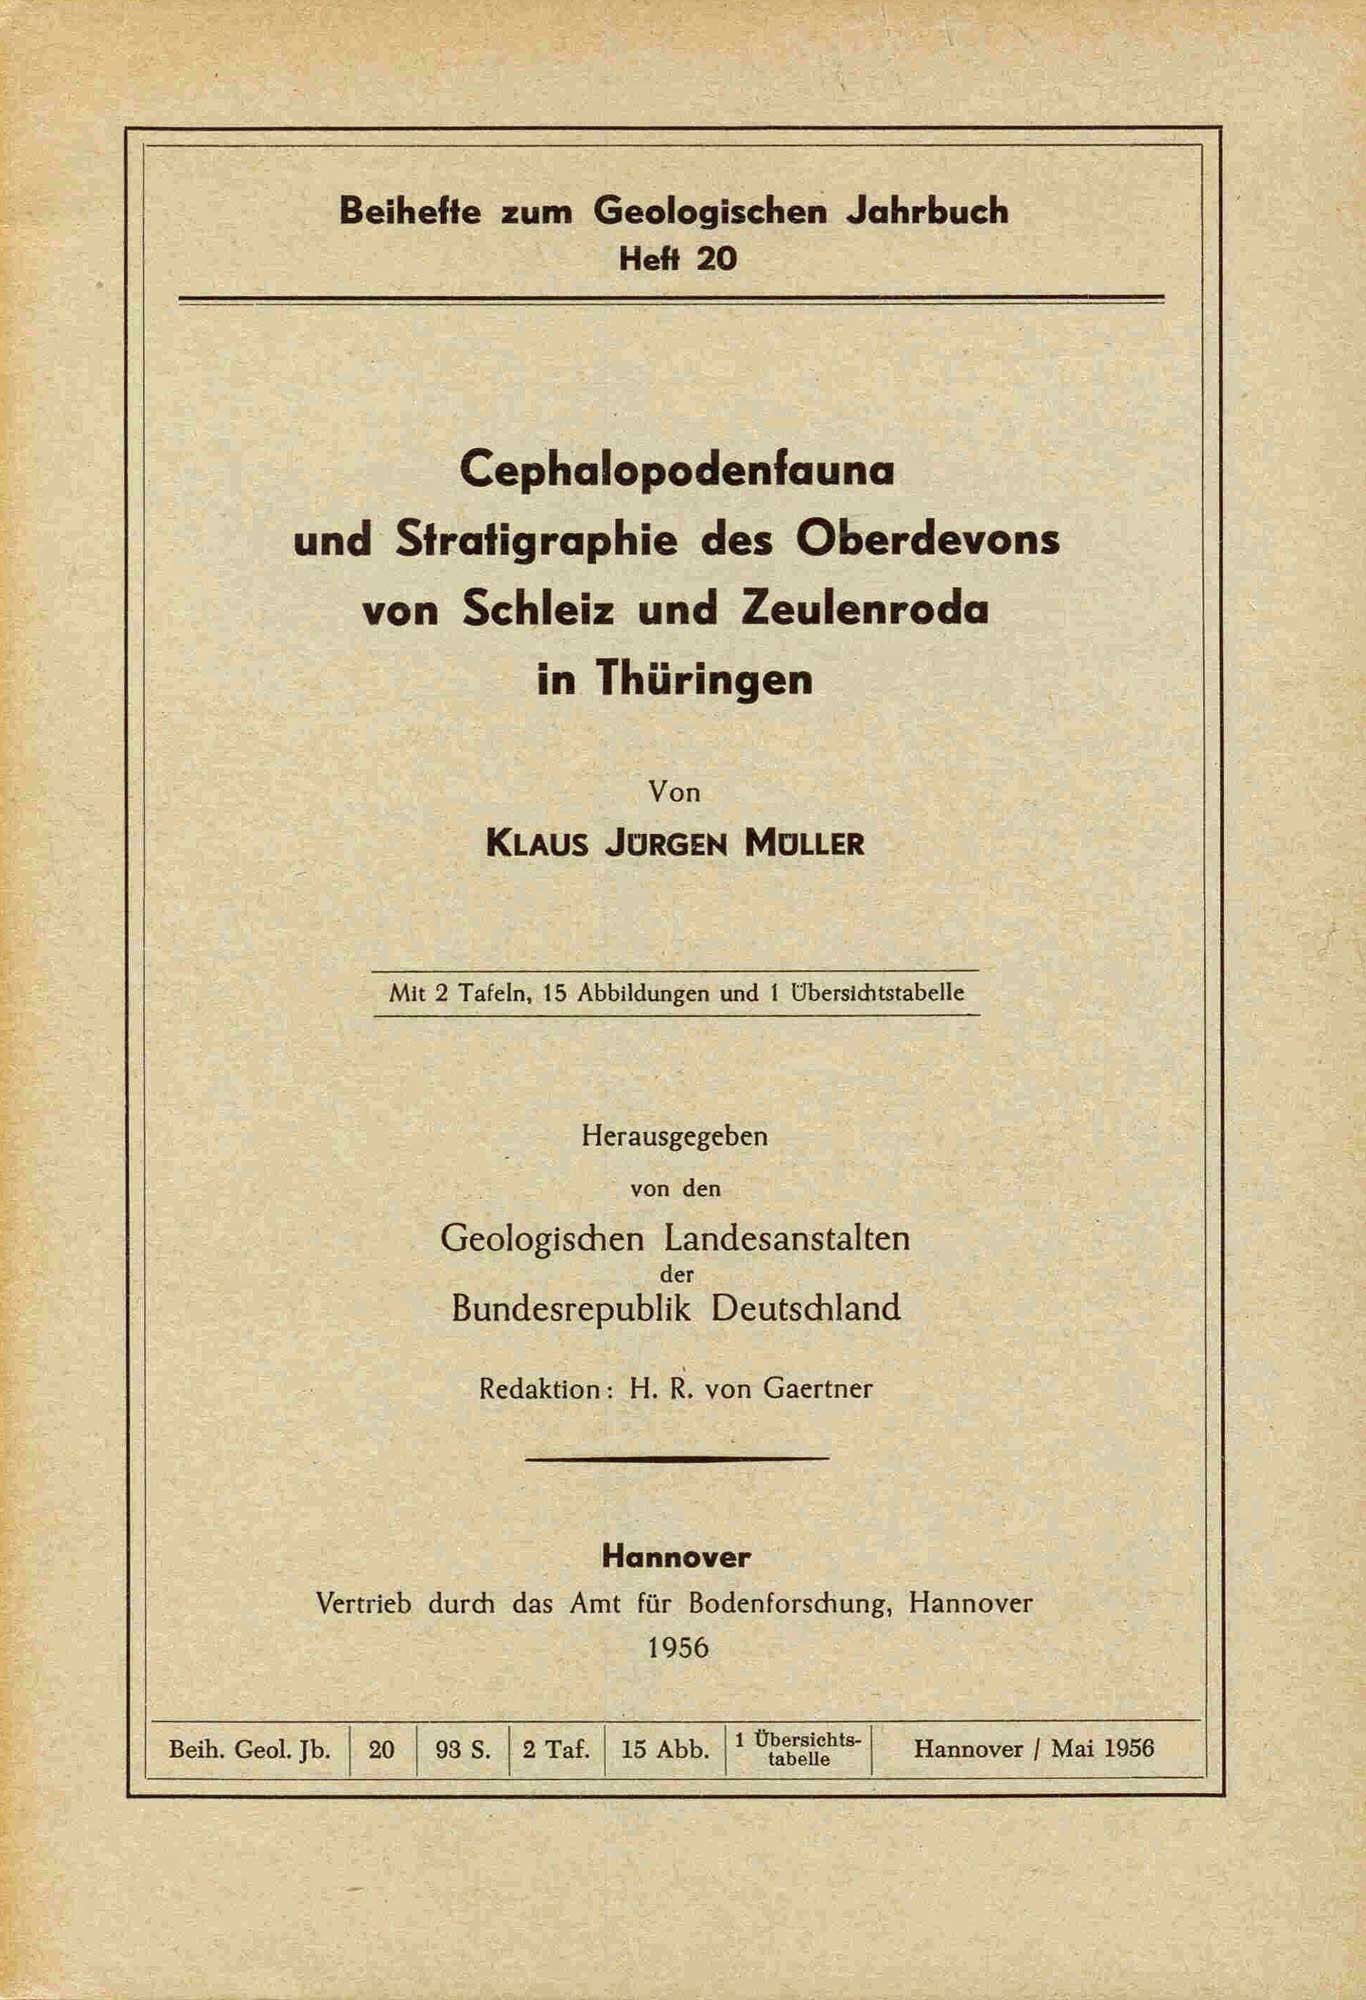 MÜLLER, K.J.: Cephalopodenfauna und Stratigraphie des Oberdevons von Schleiz und Zeulenroda in Thüringen.